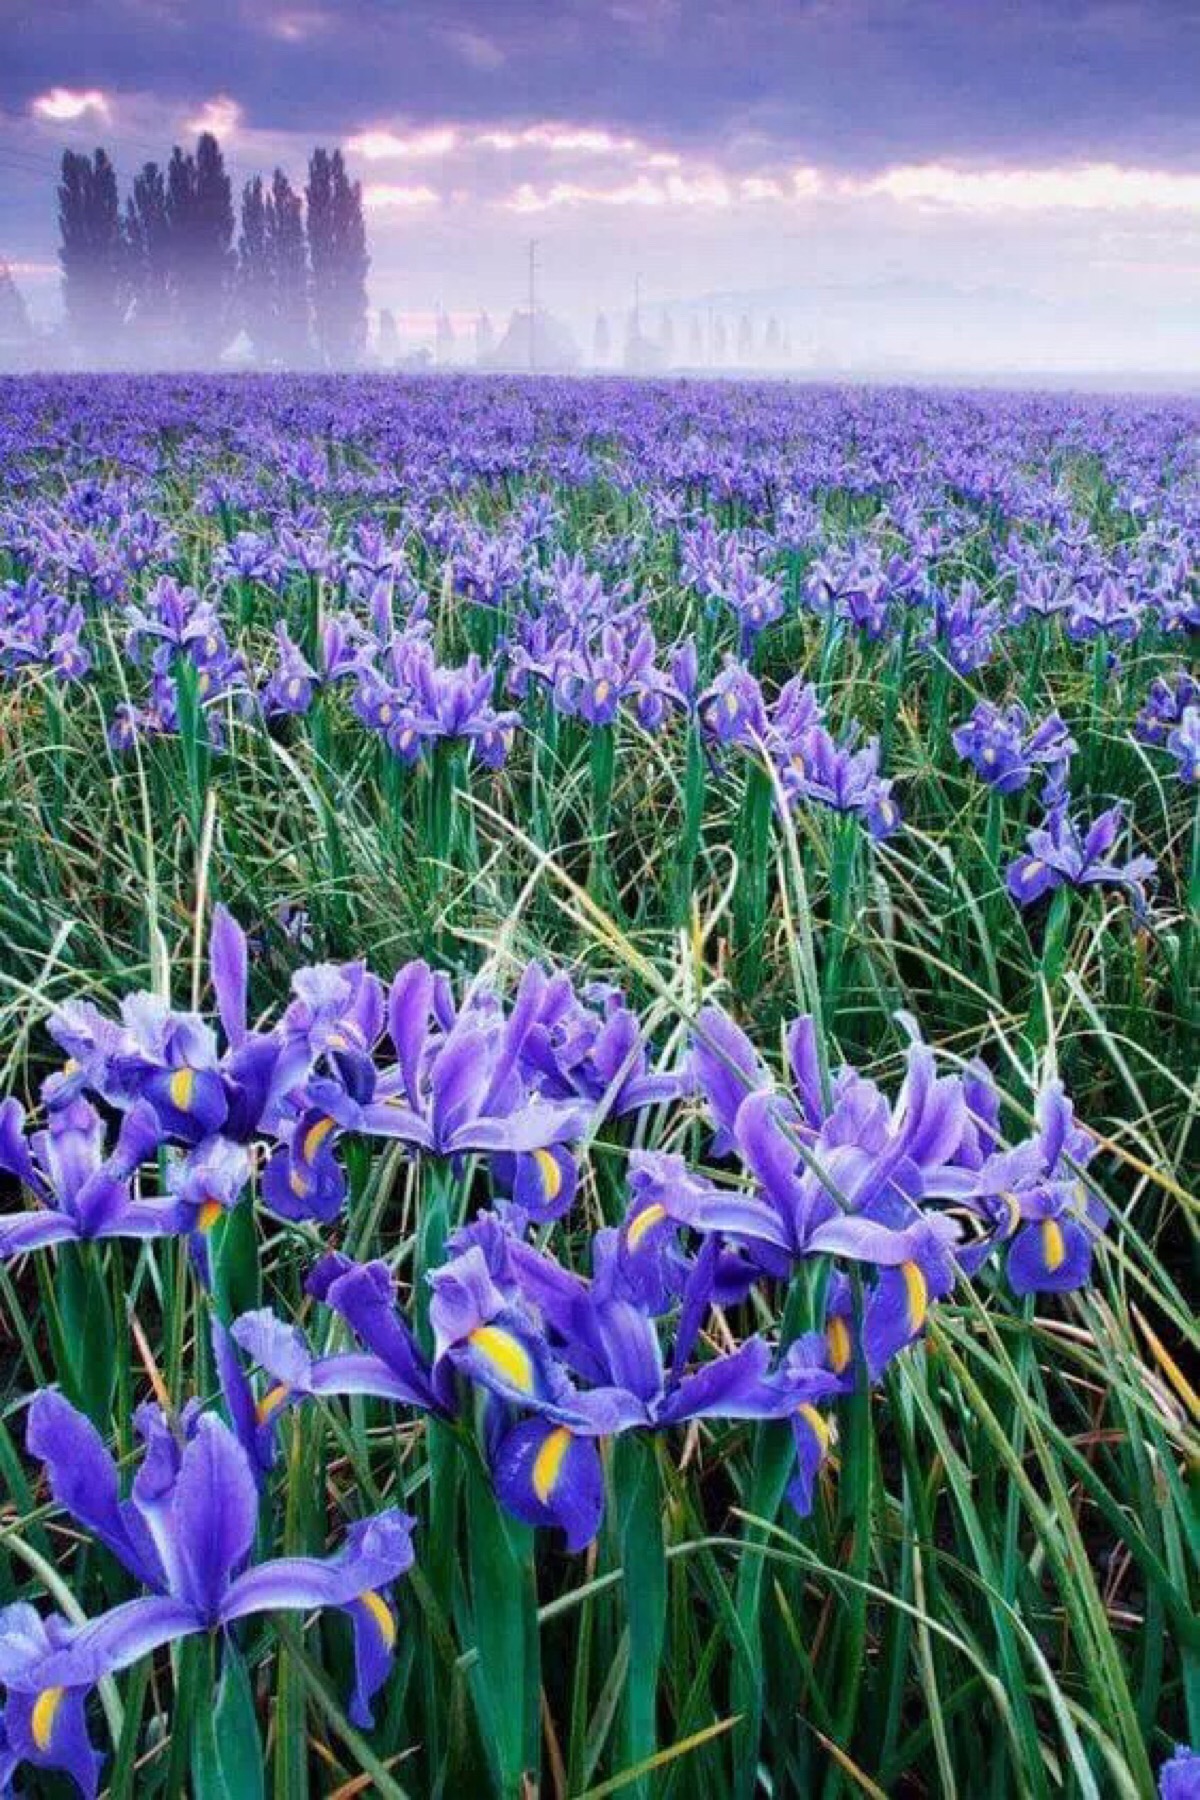 鸢尾是法国的国花,爱浪漫的法国人极爱它,大概也因为它似蓝非蓝,似紫